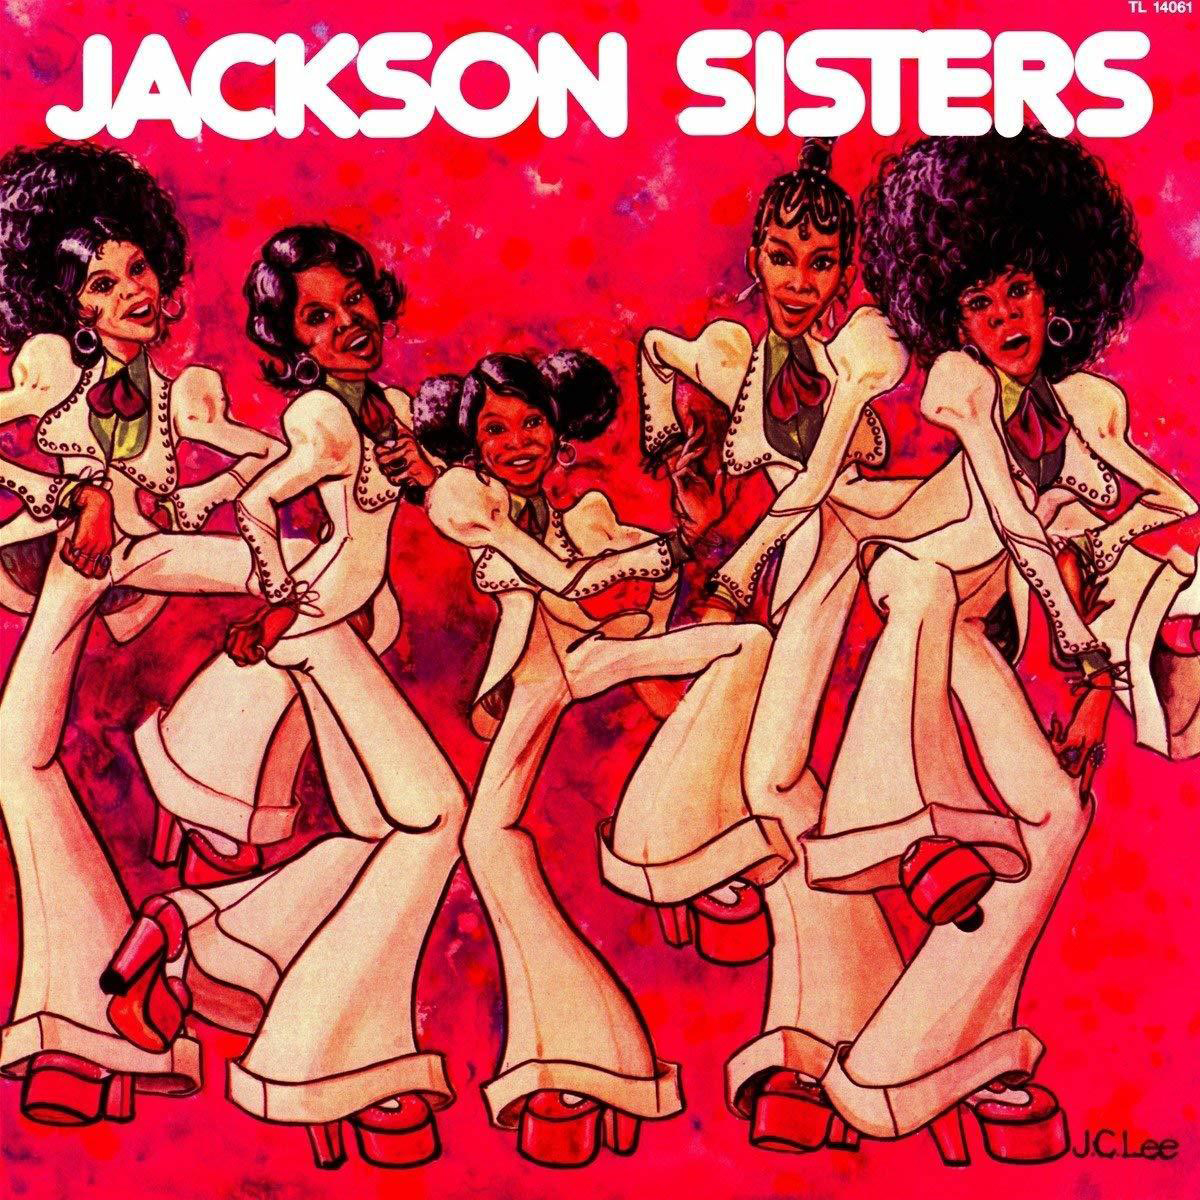 Jackson Sisters I IN BELIEVE MIRACLES - (Vinyl) -